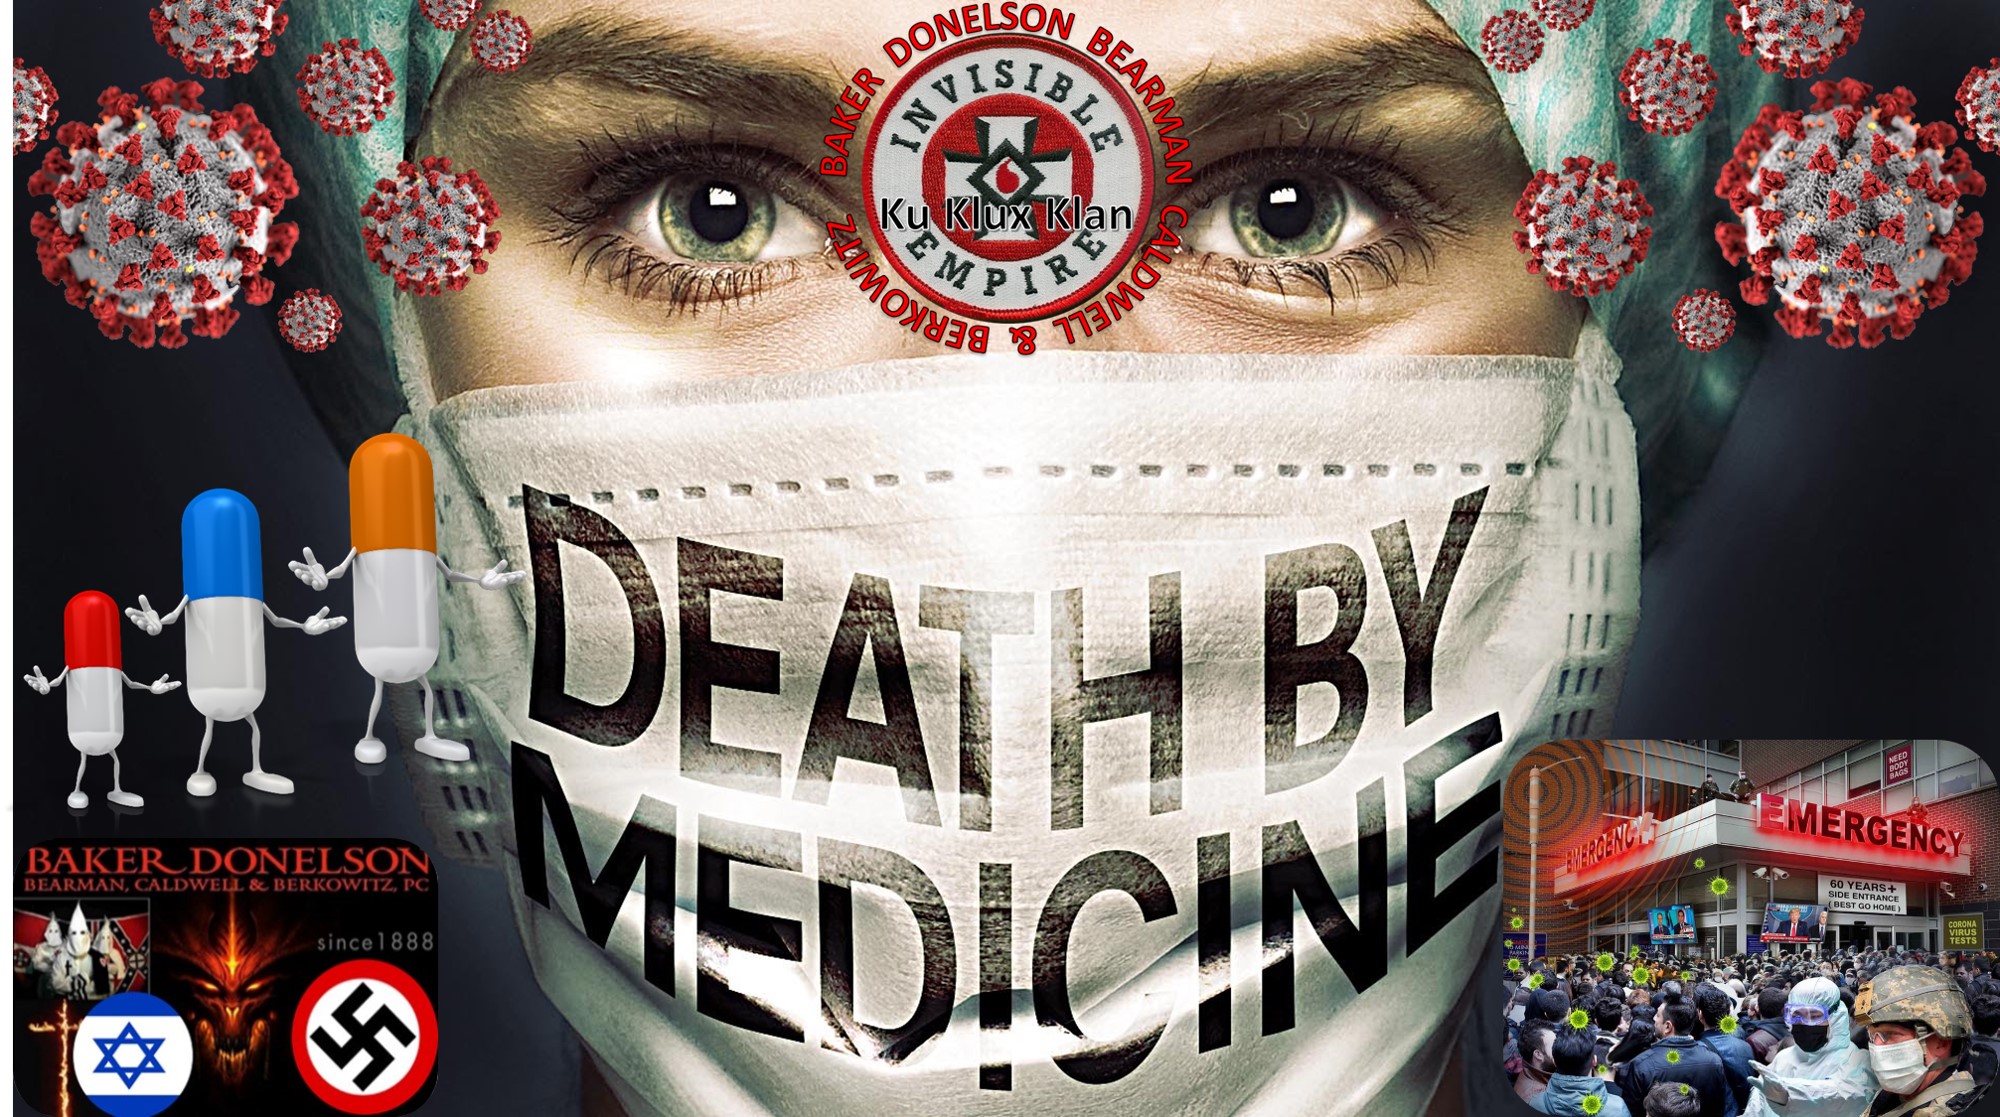 SCIENTISTS Death By Medicine